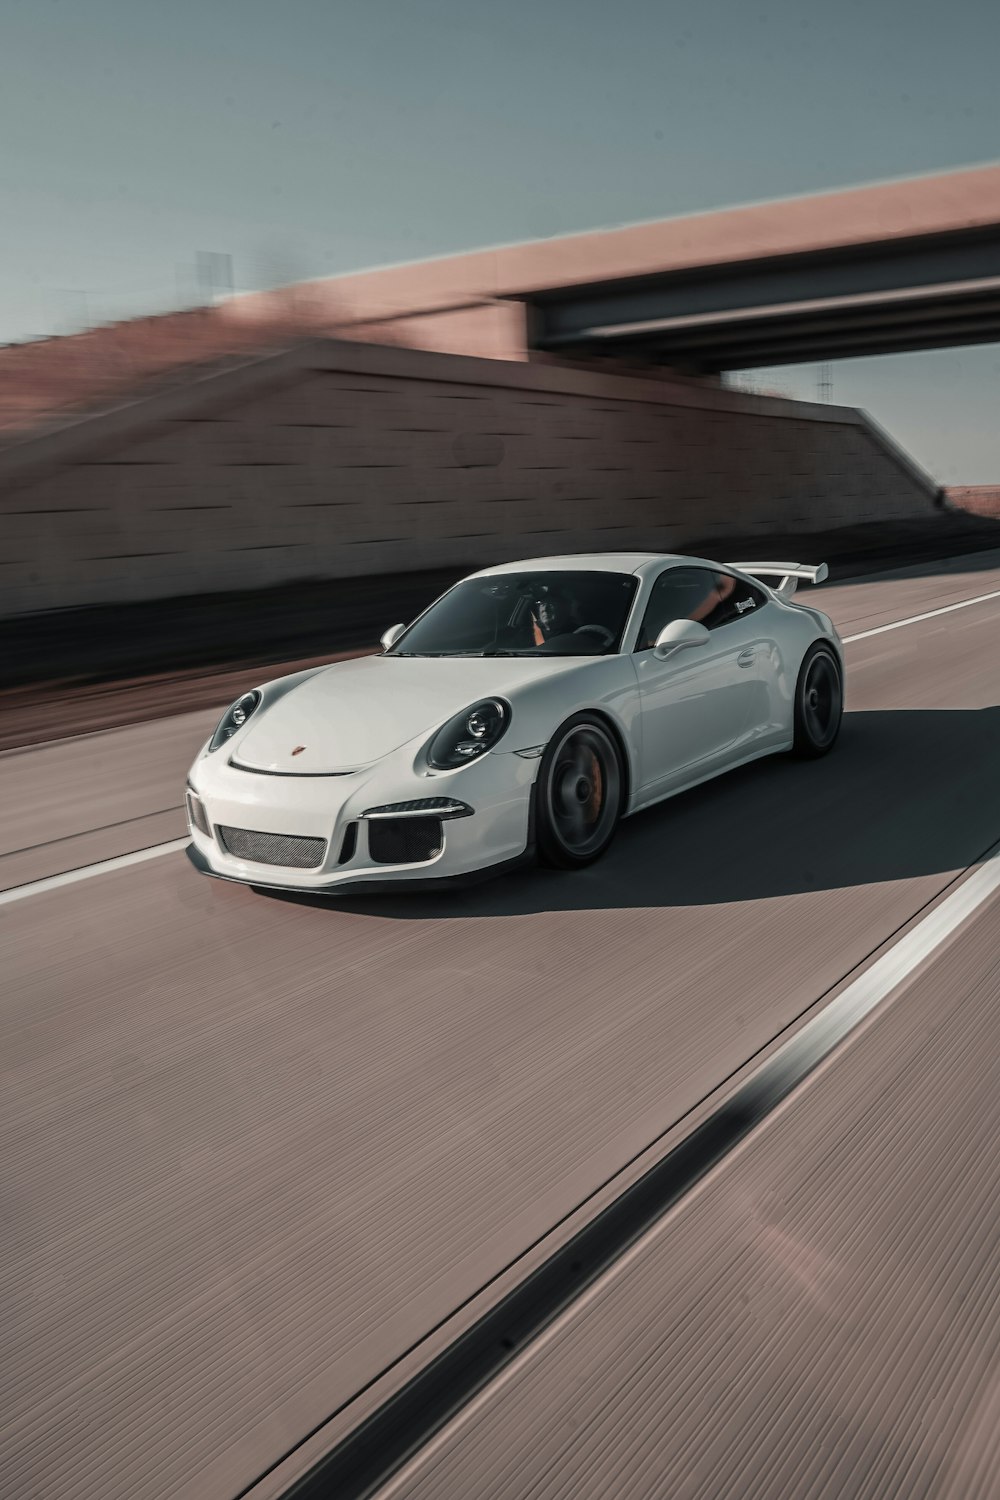 Trên cung đường hoang sơ và rộng lớn, chiếc Porsche 911 trắng tinh khôi cất cánh như một con chim ưng, thể hiện tốc độ và sức mạnh của nó. Hình ảnh này sẽ đưa bạn trở lại với bầu không khí tuyệt vời của những cuộc đua đầy sự mãnh liệt và hấp dẫn. Hãy tận hưởng cảm giác tuyệt vời này với chiếc Porsche